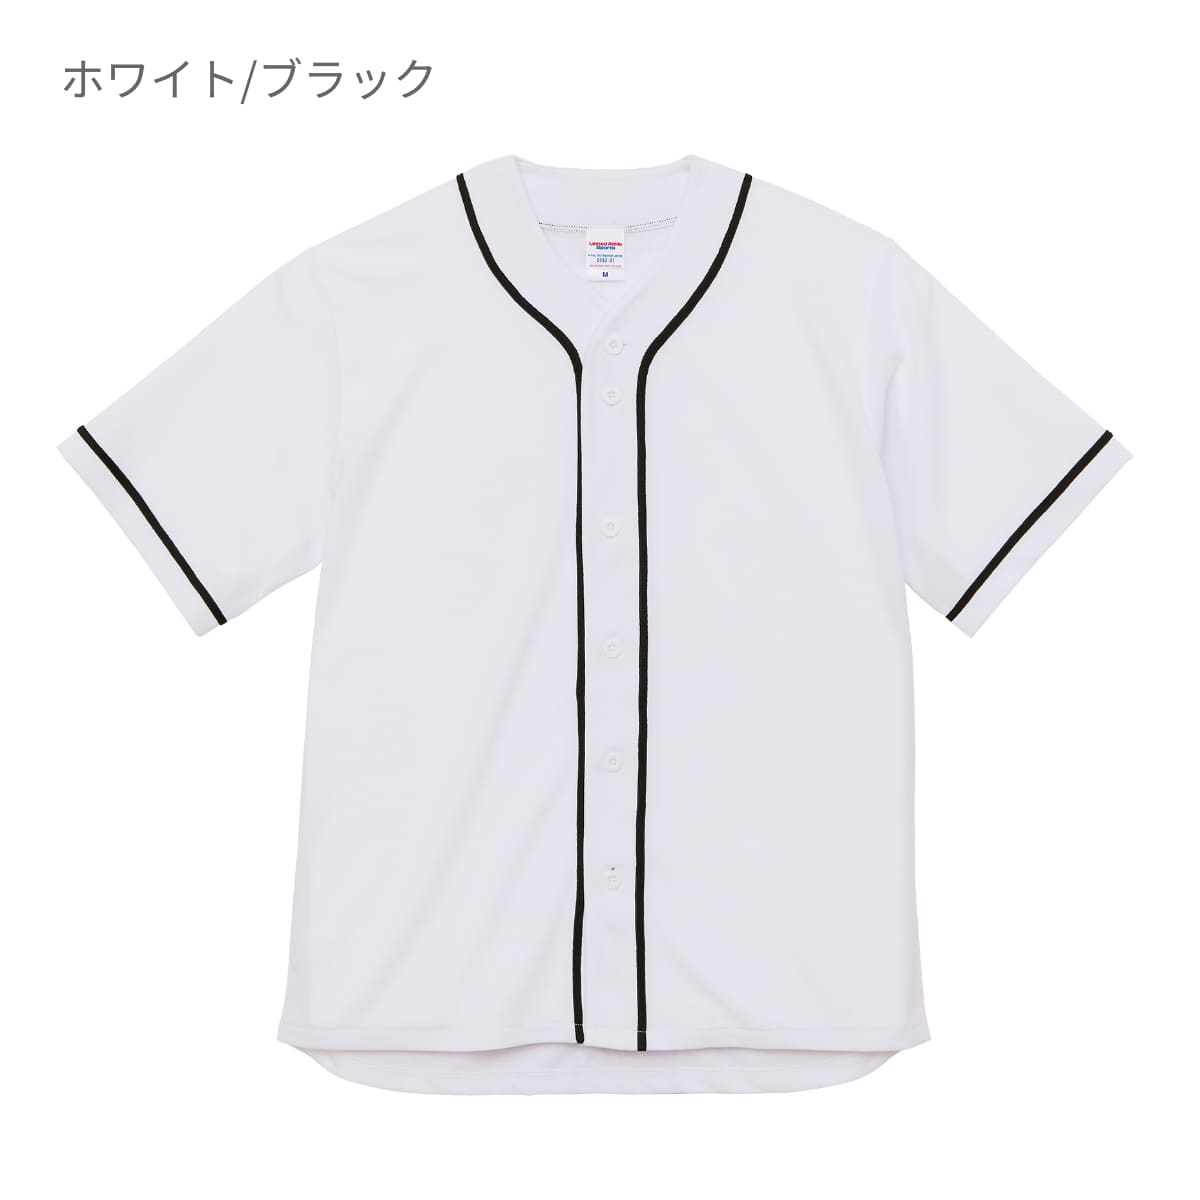 4.1オンス ドライアスレチック ベースボールシャツ | ビッグサイズ | 1枚 | 5982-01 | ネイビー/ホワイト